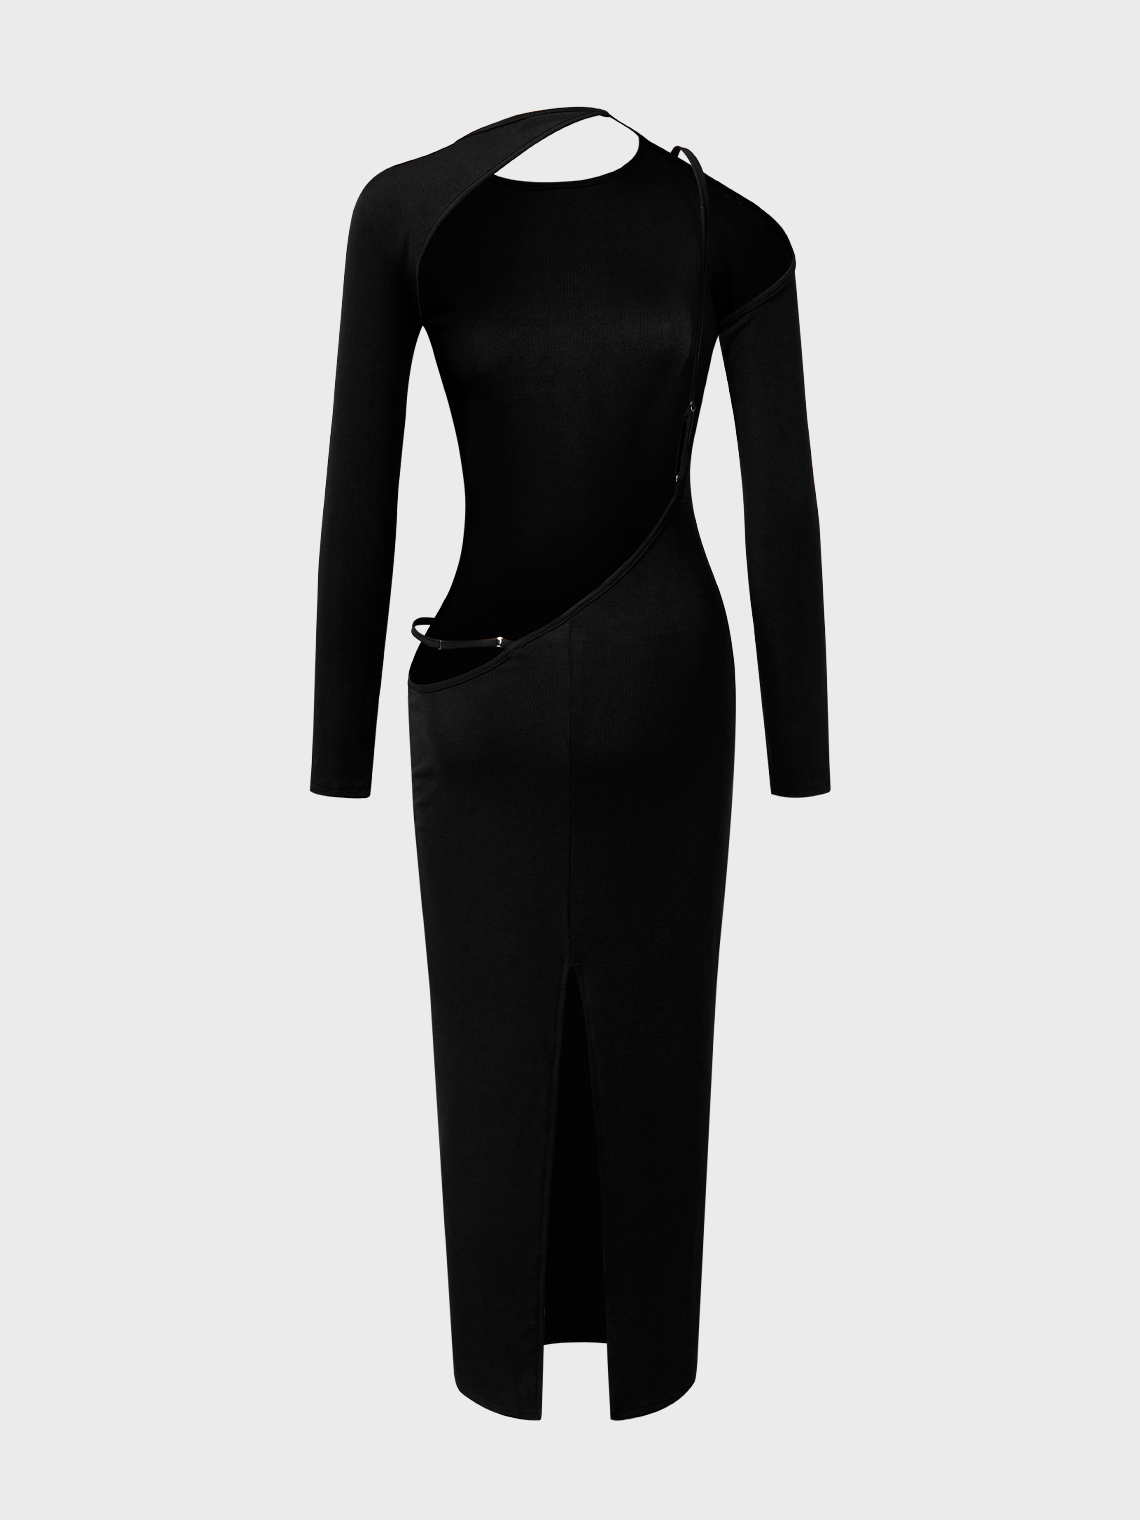 【Final Sale】Street Black Backless Dress Midi Dress